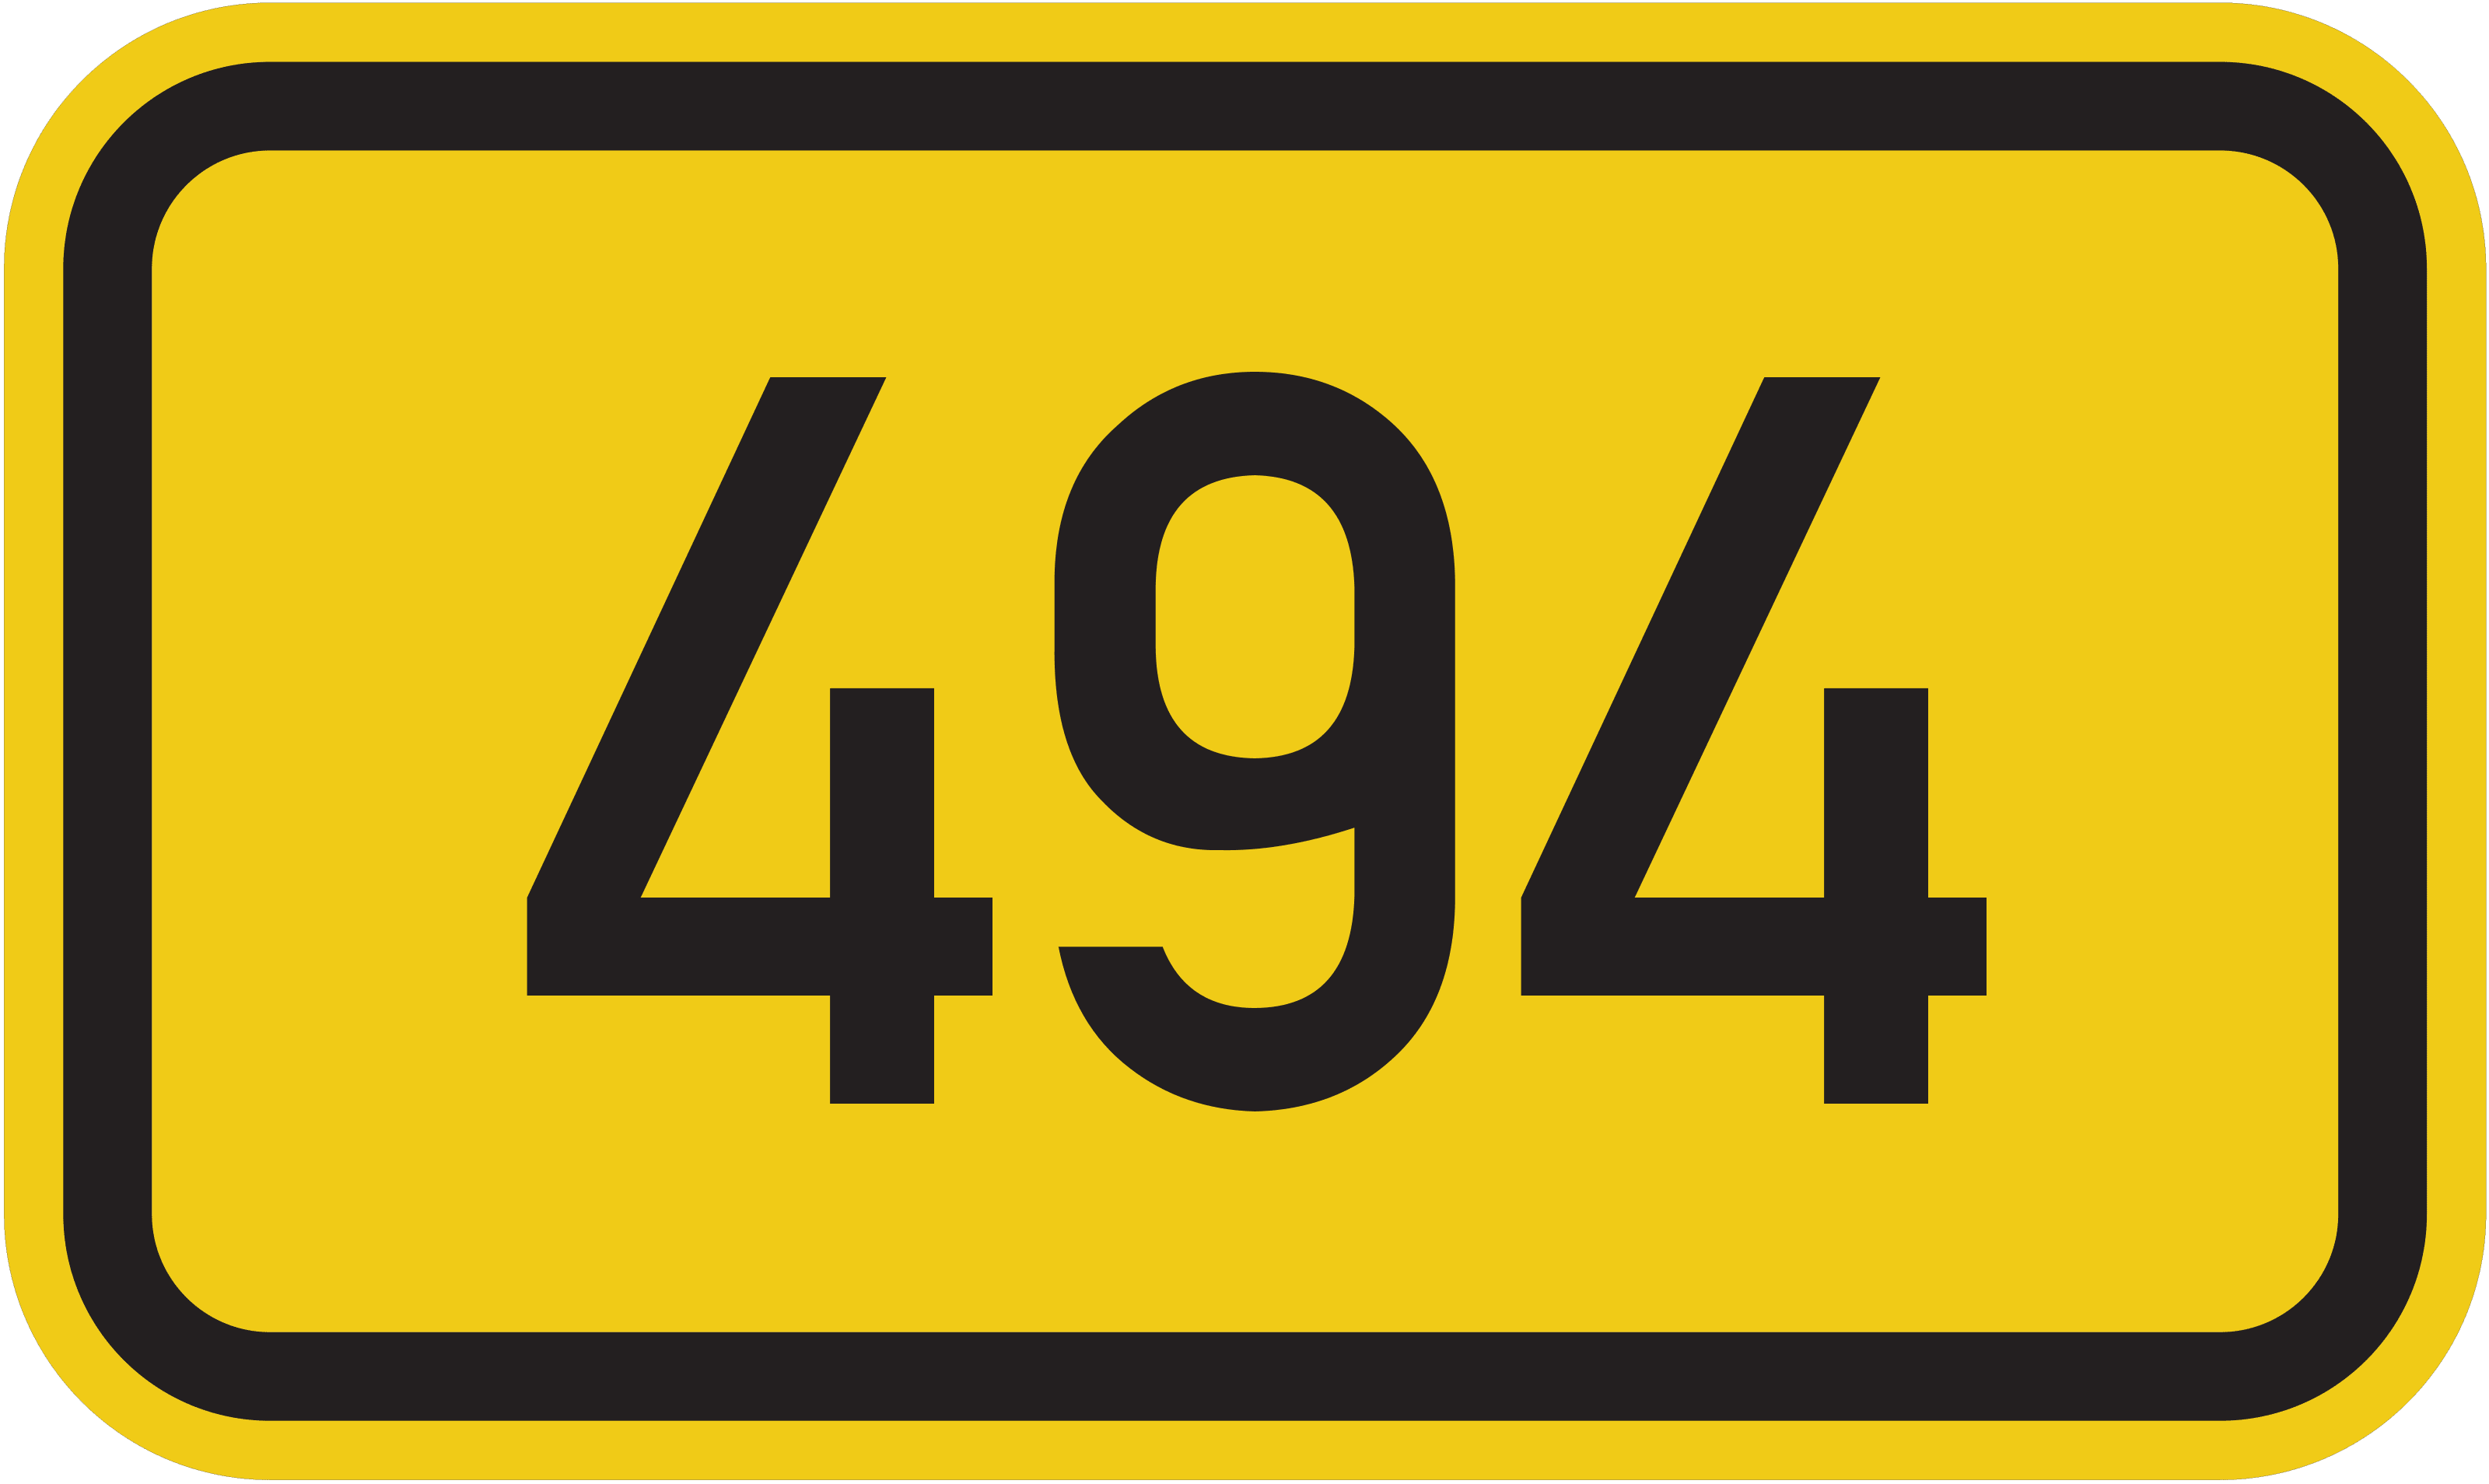 Bundesstraße B 494